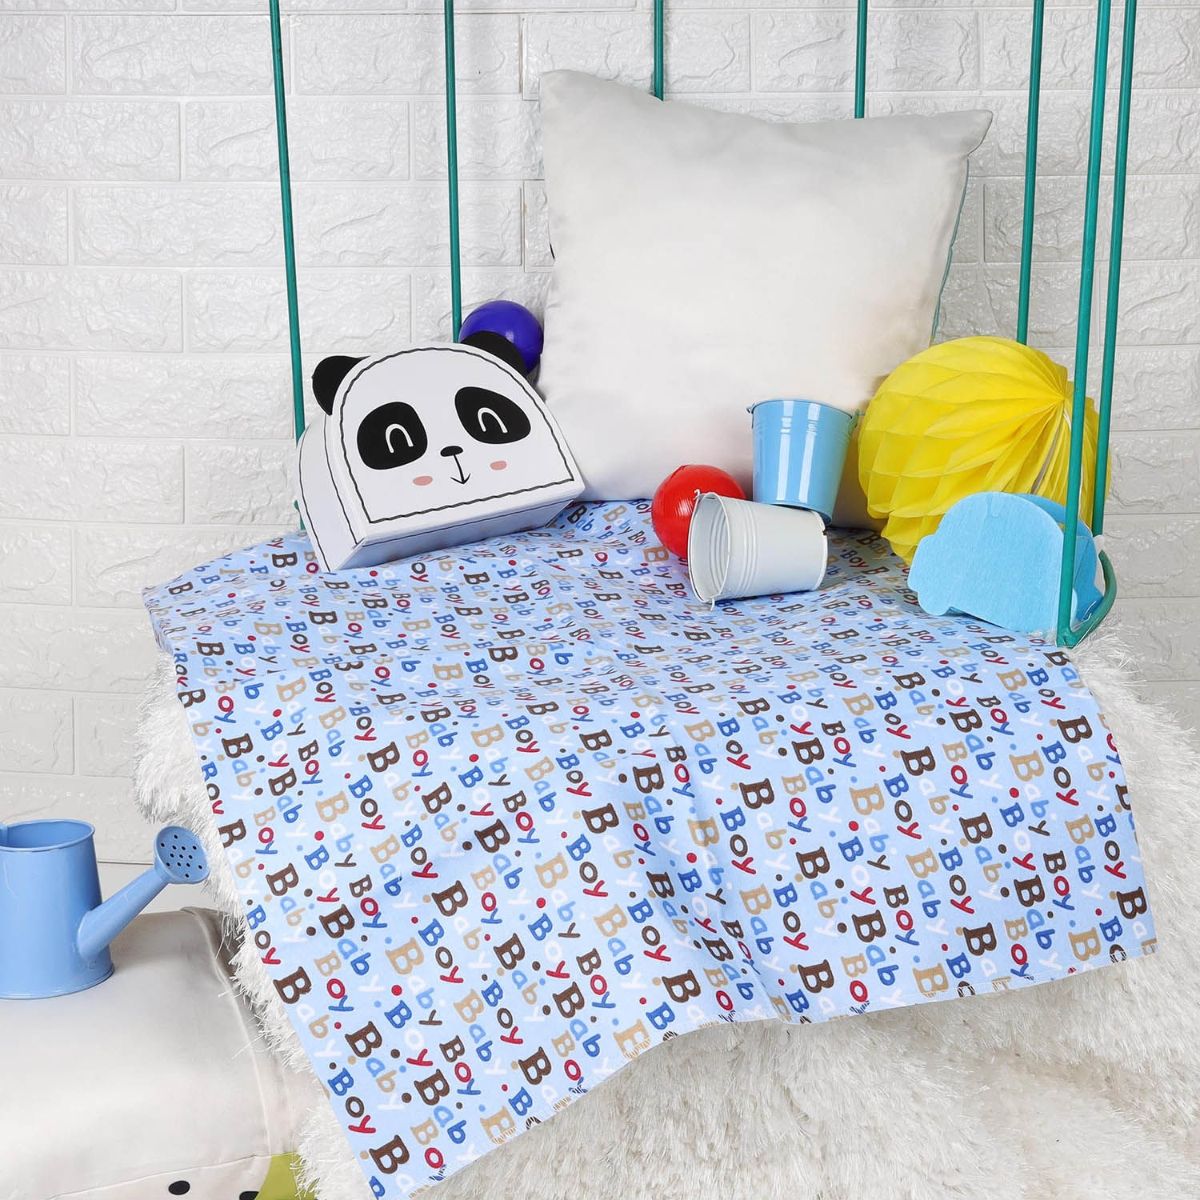 Kicks and Crawl Baby Boy Waterproof Bed Sheet - Blue